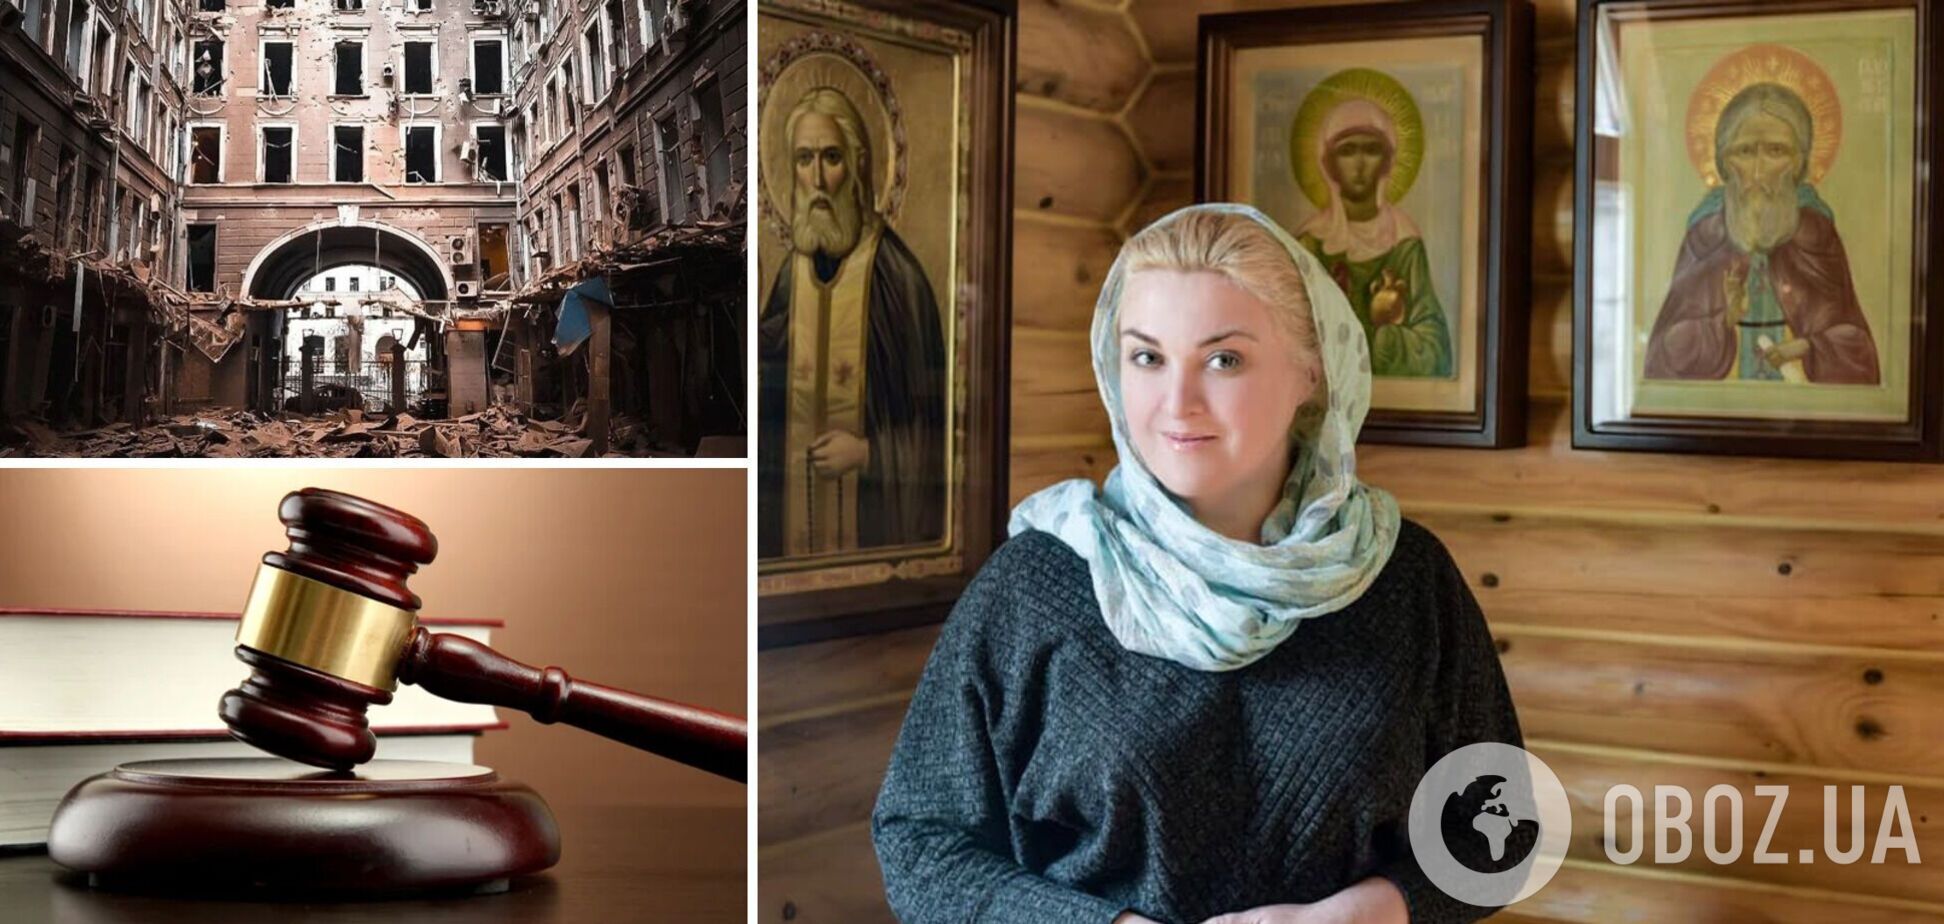 Директорка Печерського ліцею здавала позиції ЗСУ та втекла до Угорщини: в Україні суди виносять м'які вироки зрадникам